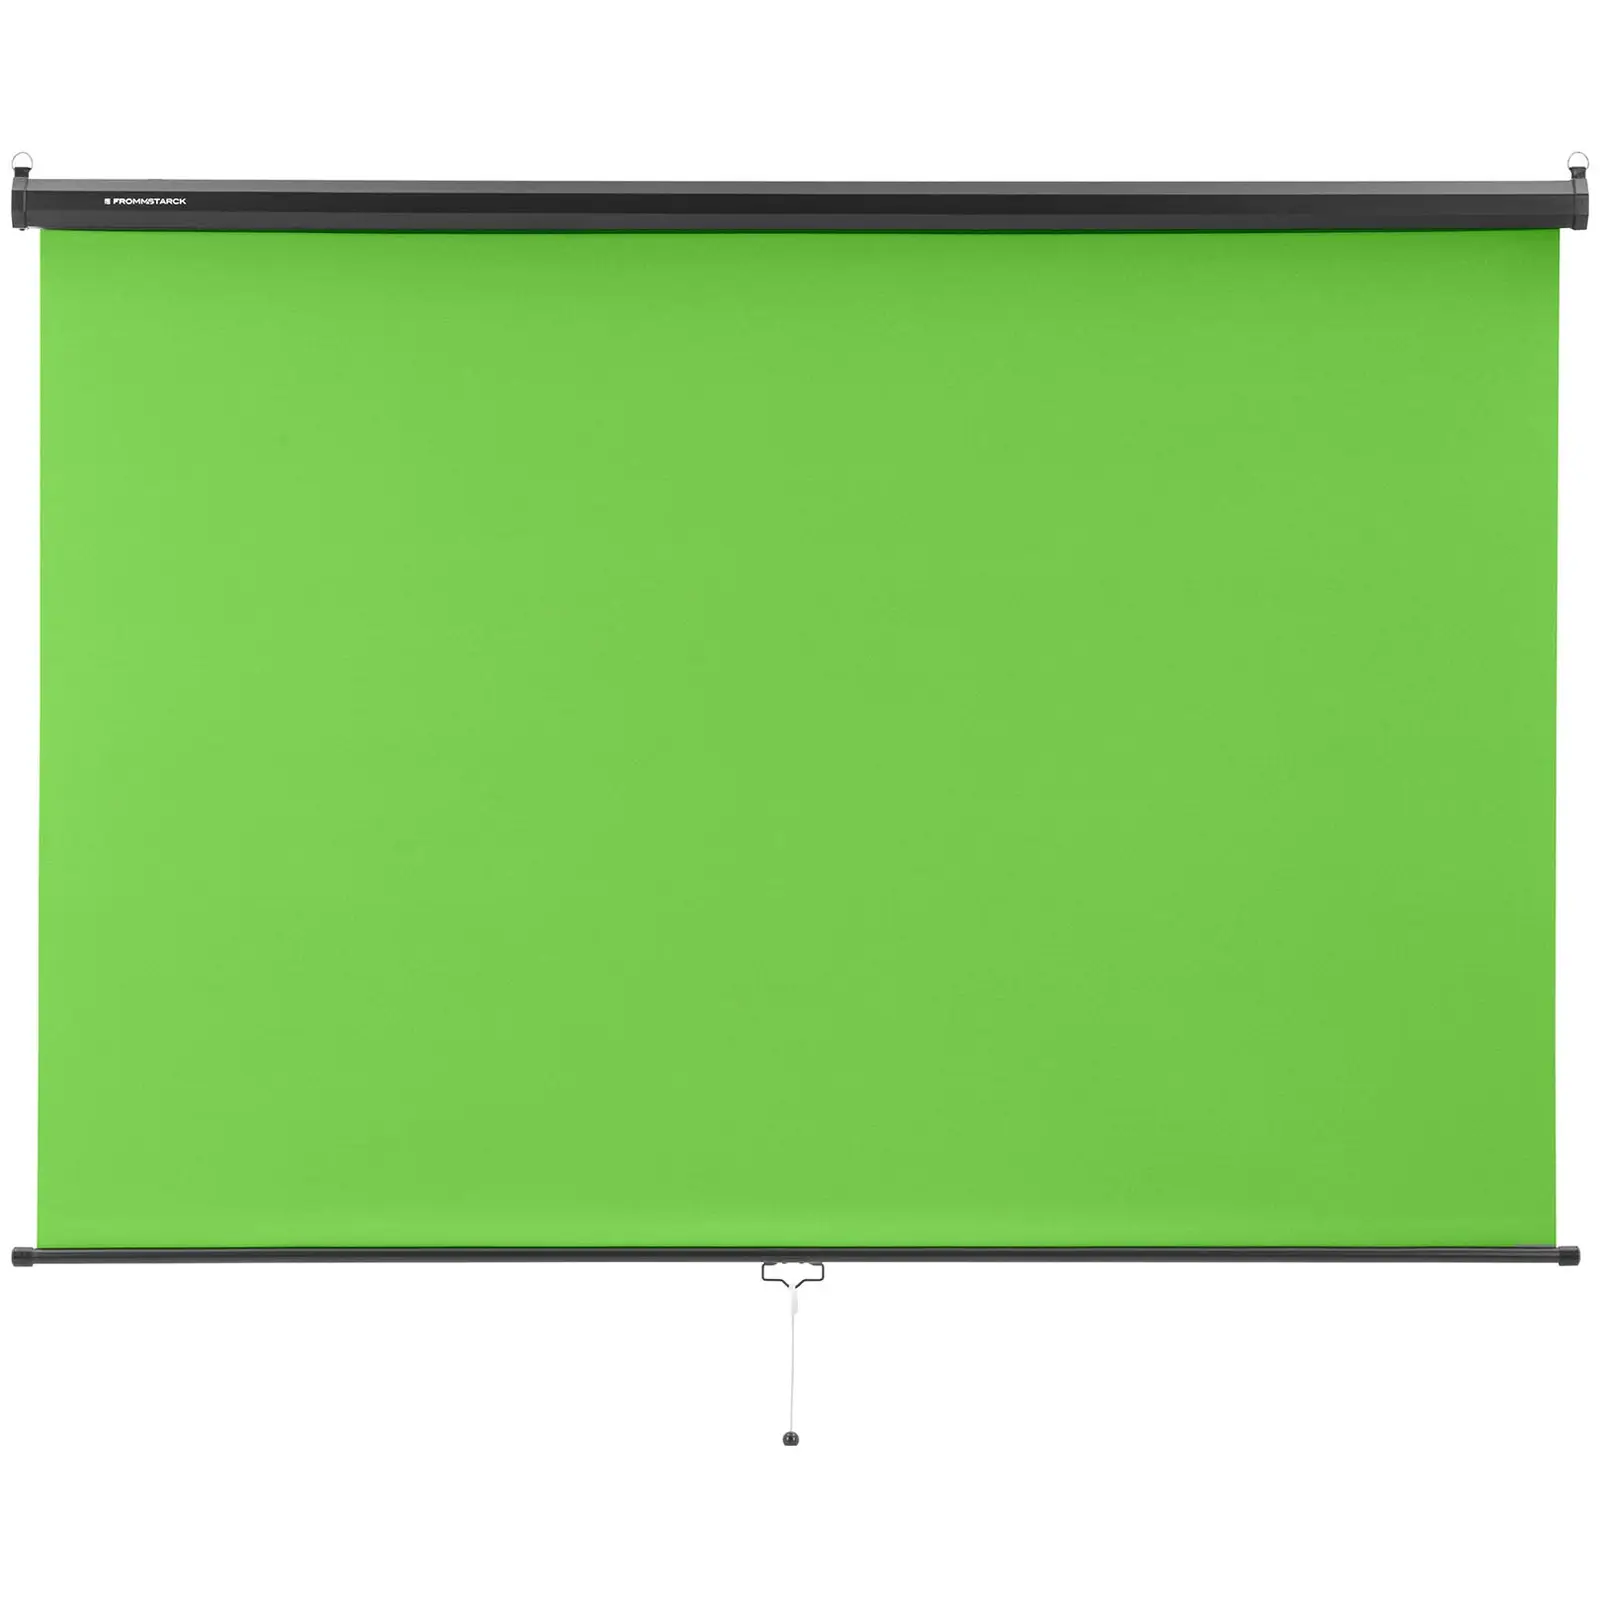 Green Screen - Rollo - für Wand und Decke - 84" - 2060 x 1813 mm